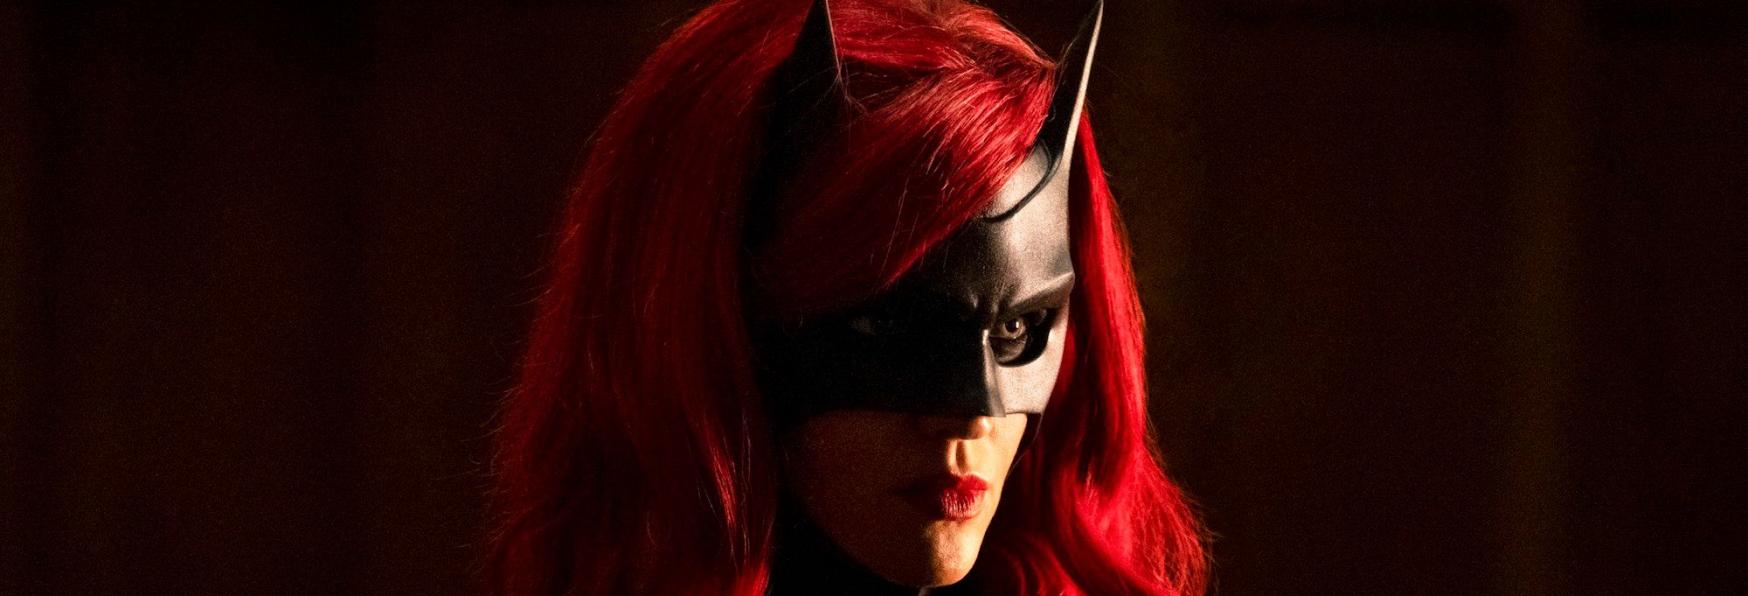 Batwoman 2: Rilasciato il Teaser Trailer Ufficiale della nuova Stagione